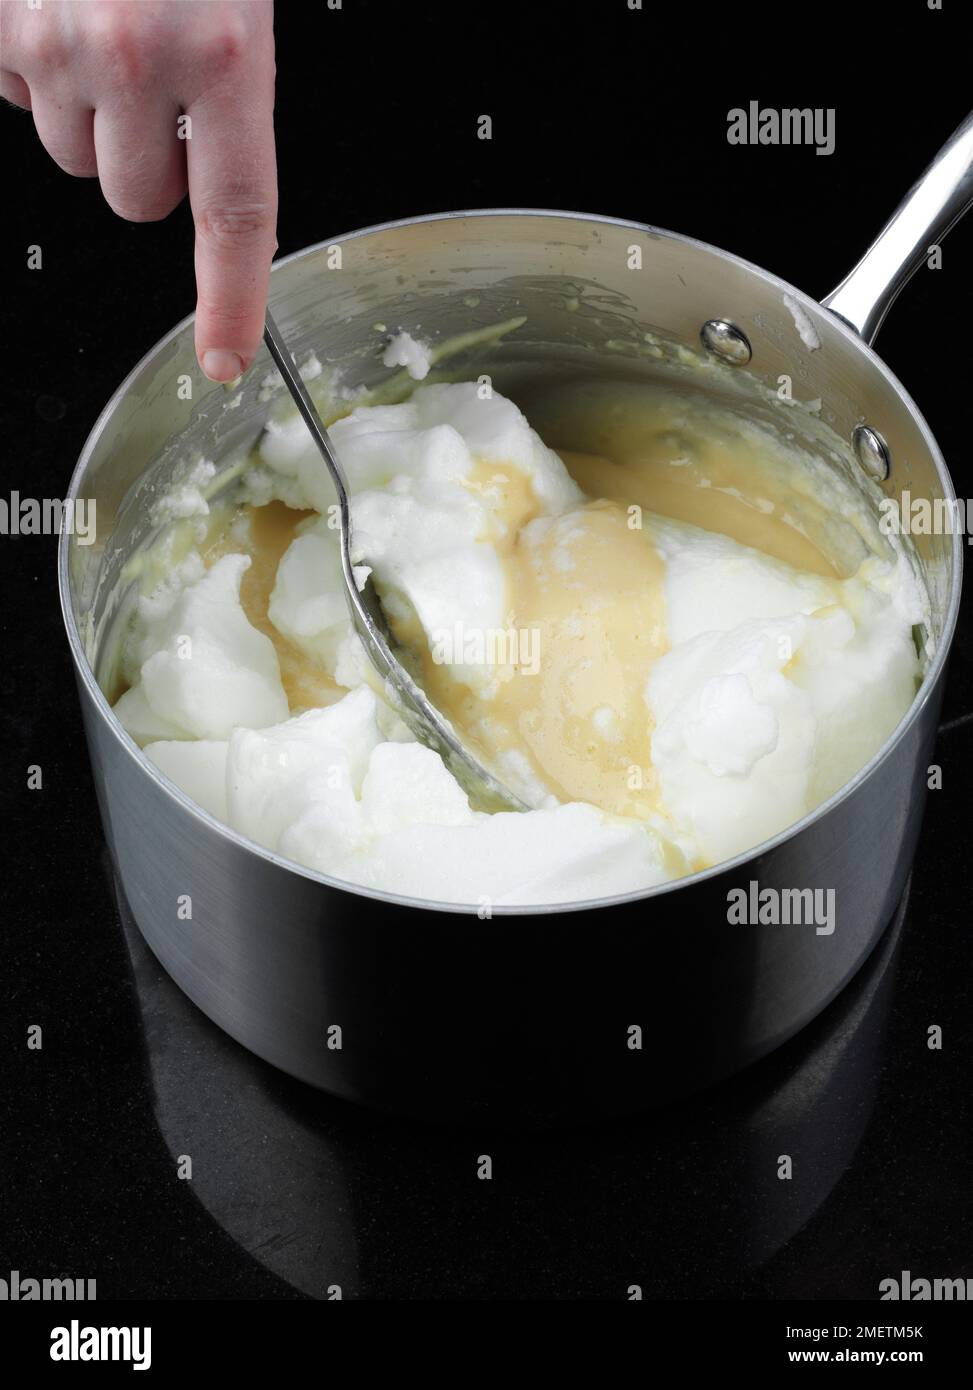 Käsesoufflés zubereiten, Eiweiß zur Mischung hinzufügen und mit einem Löffel zusammenfalten Stockfoto